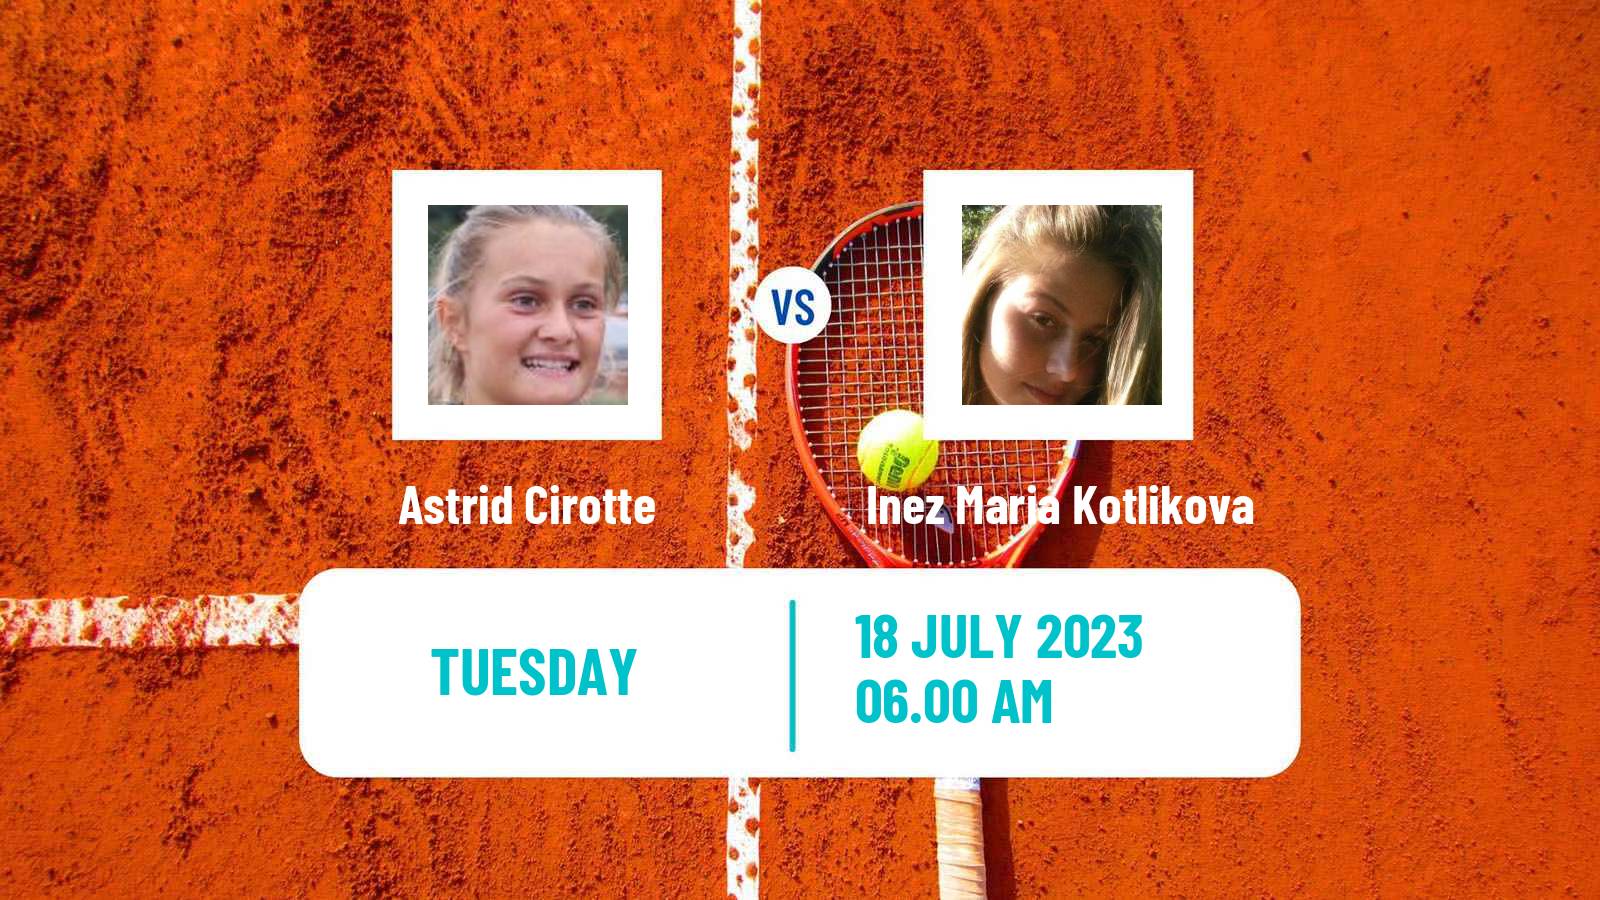 Tennis ITF W15 Les Contamines Montjoie Women Astrid Cirotte - Inez Maria Kotlikova